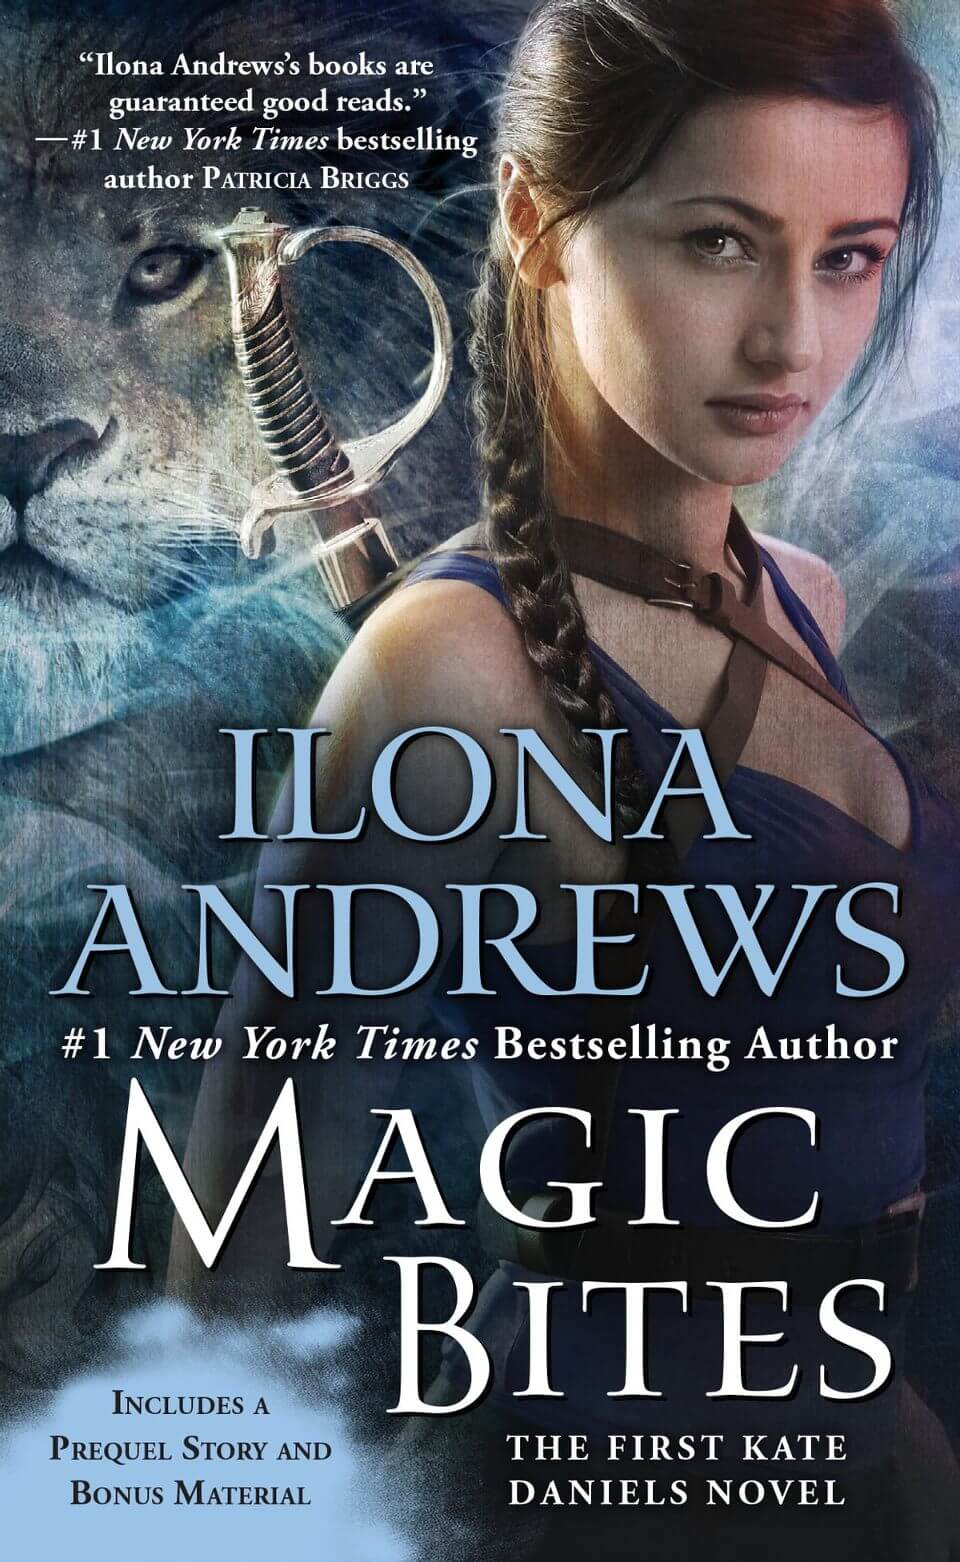 magic bites book cover